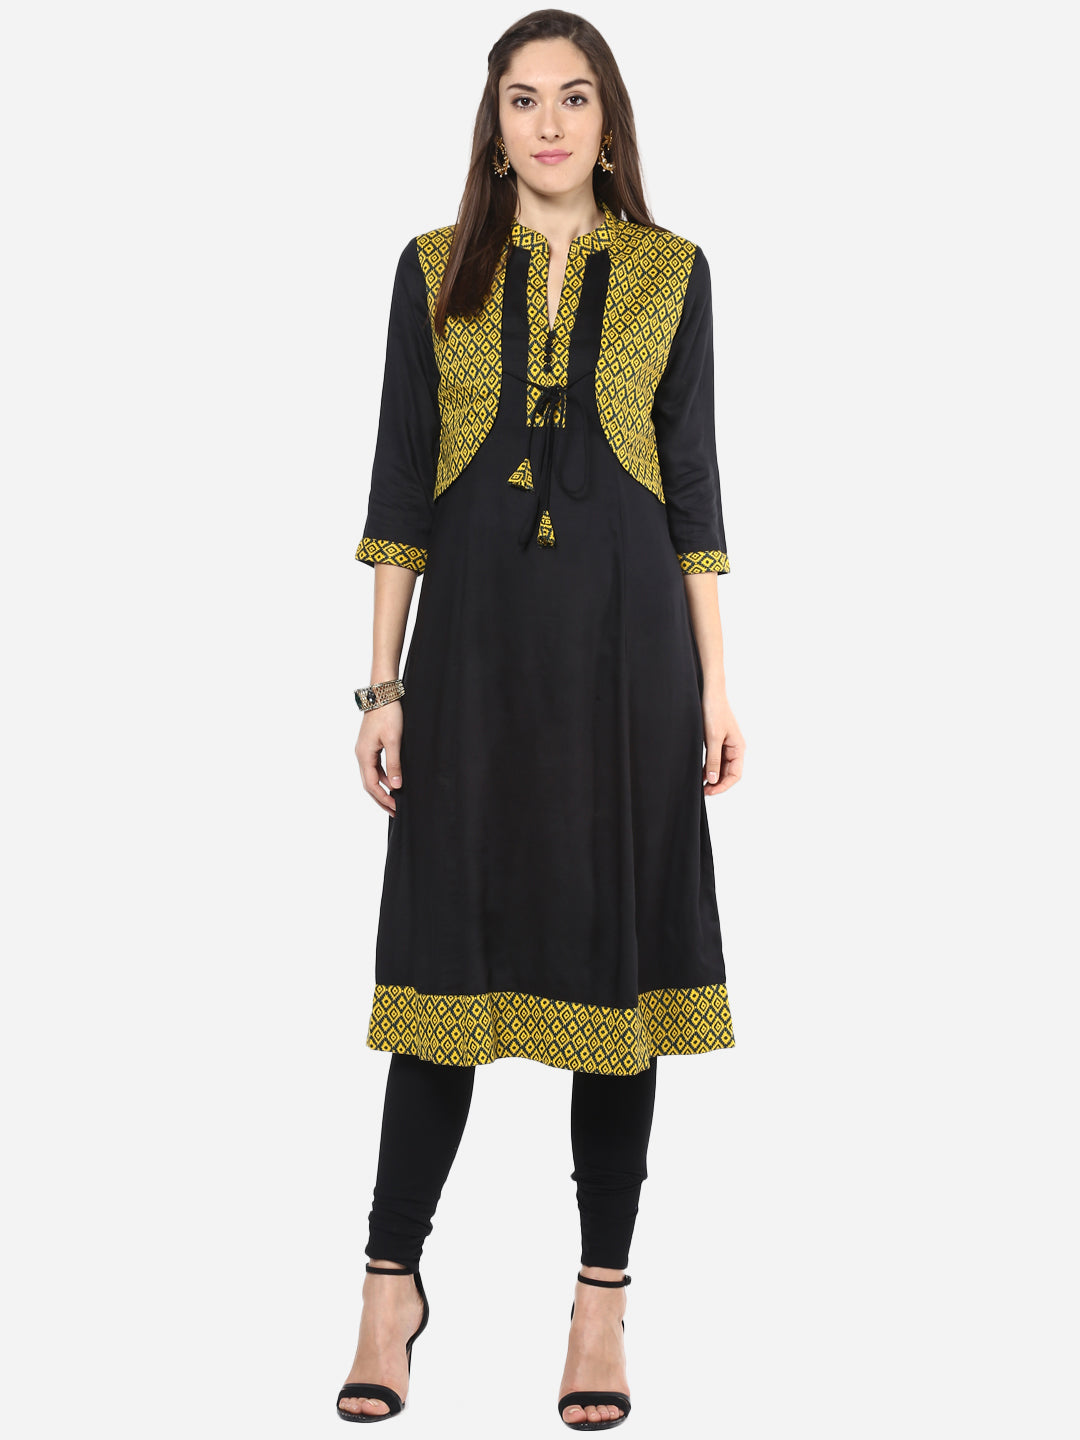 Women's Yellow and Black Jacket style Anarkali Kurti